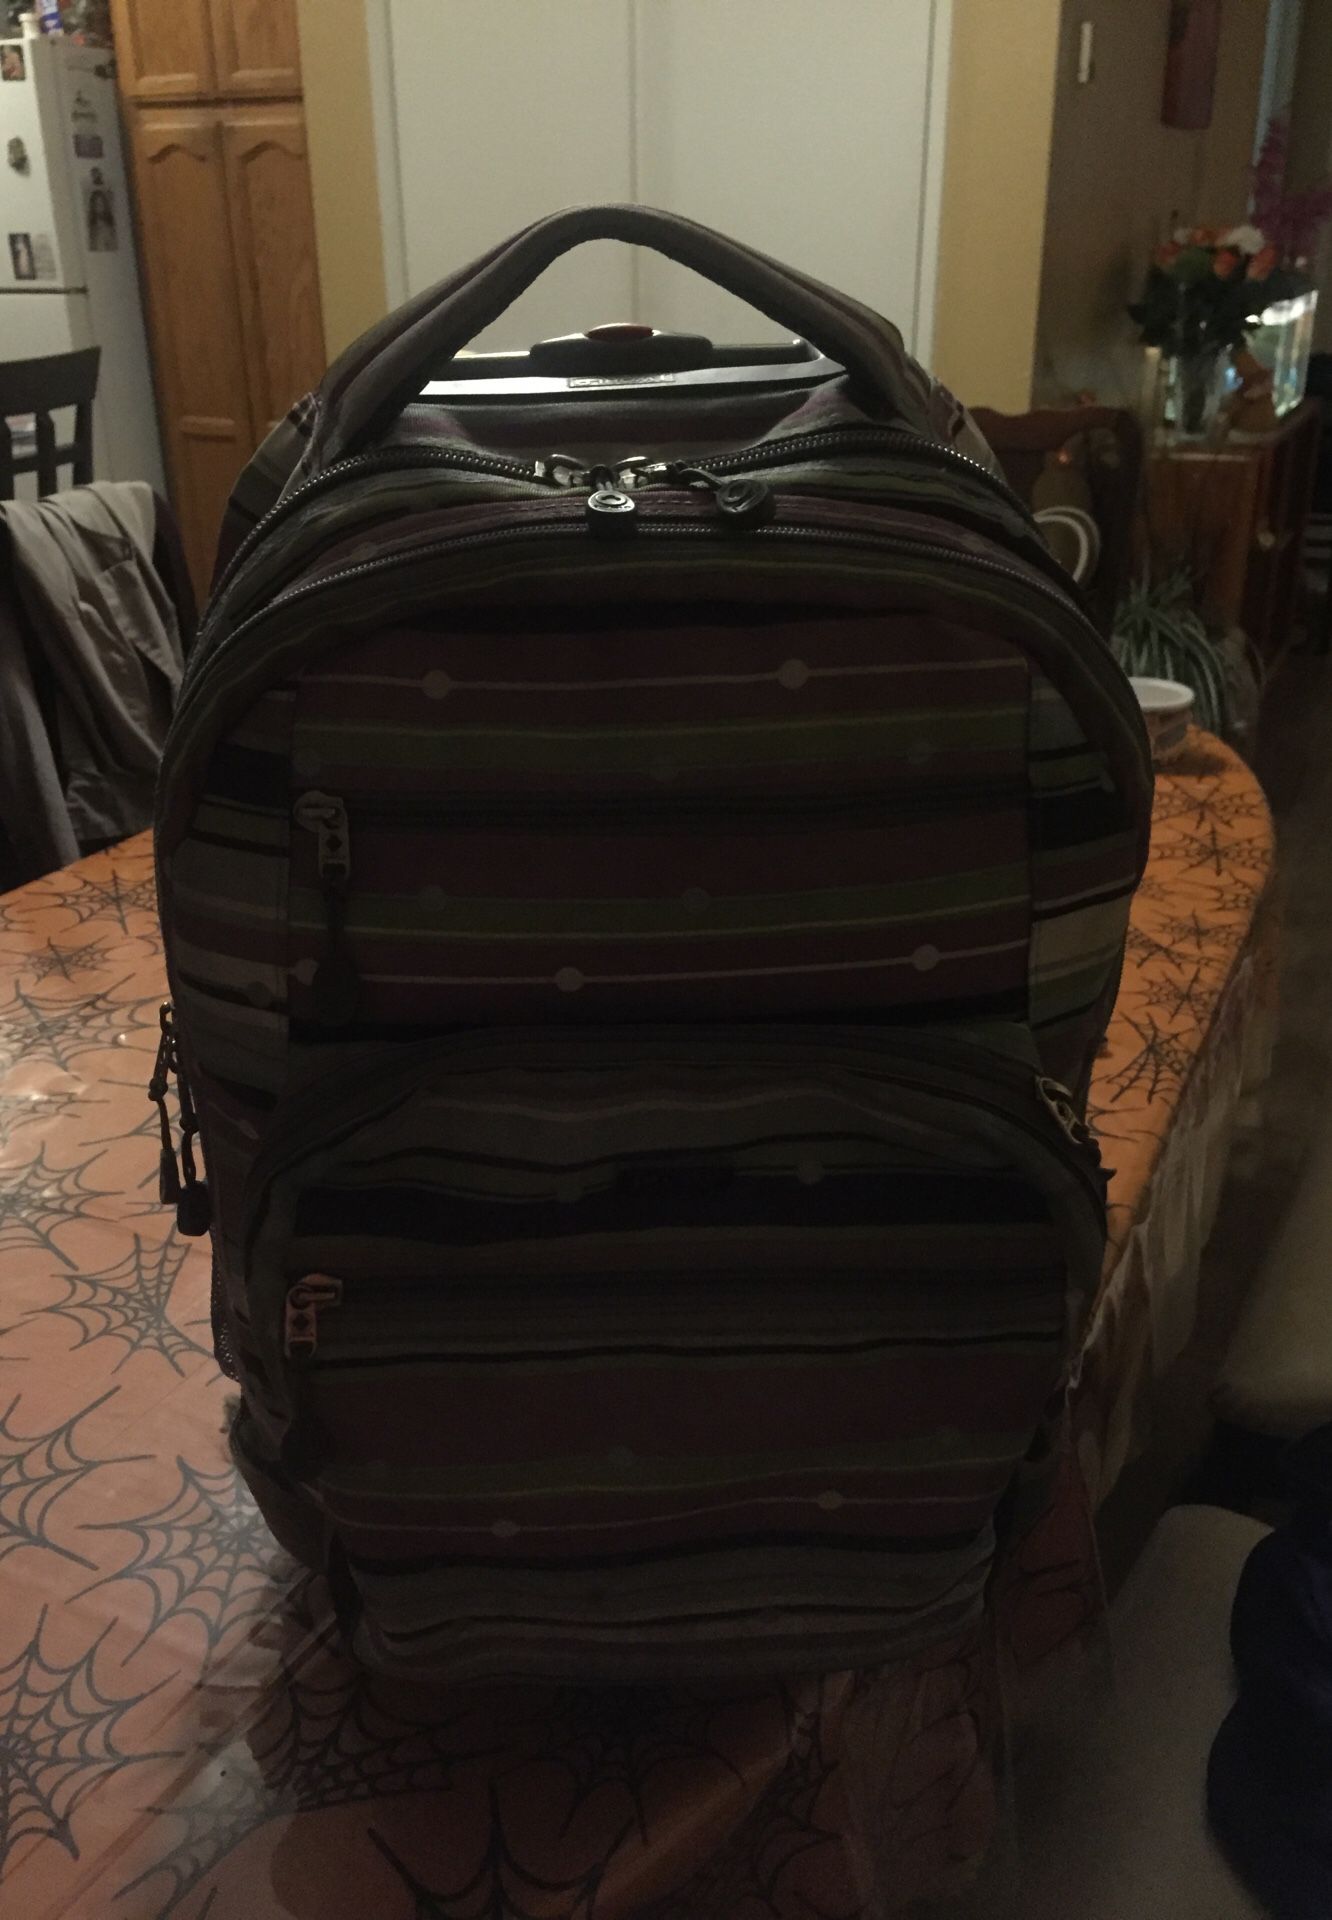 Roller backpack